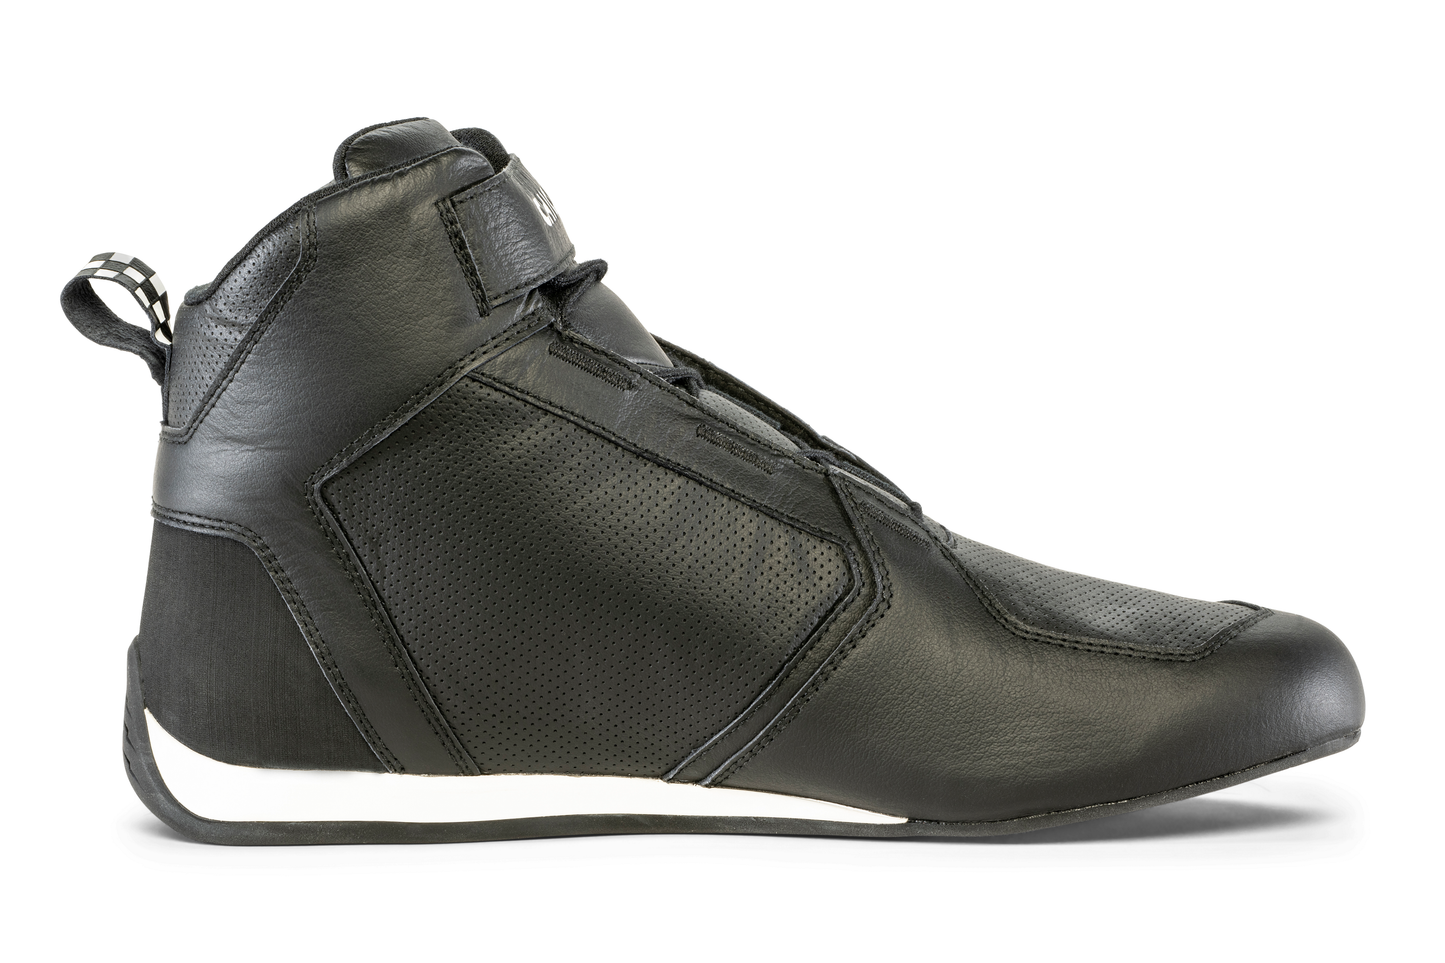 Chicane Men's GT1 Racing Shoe, Black